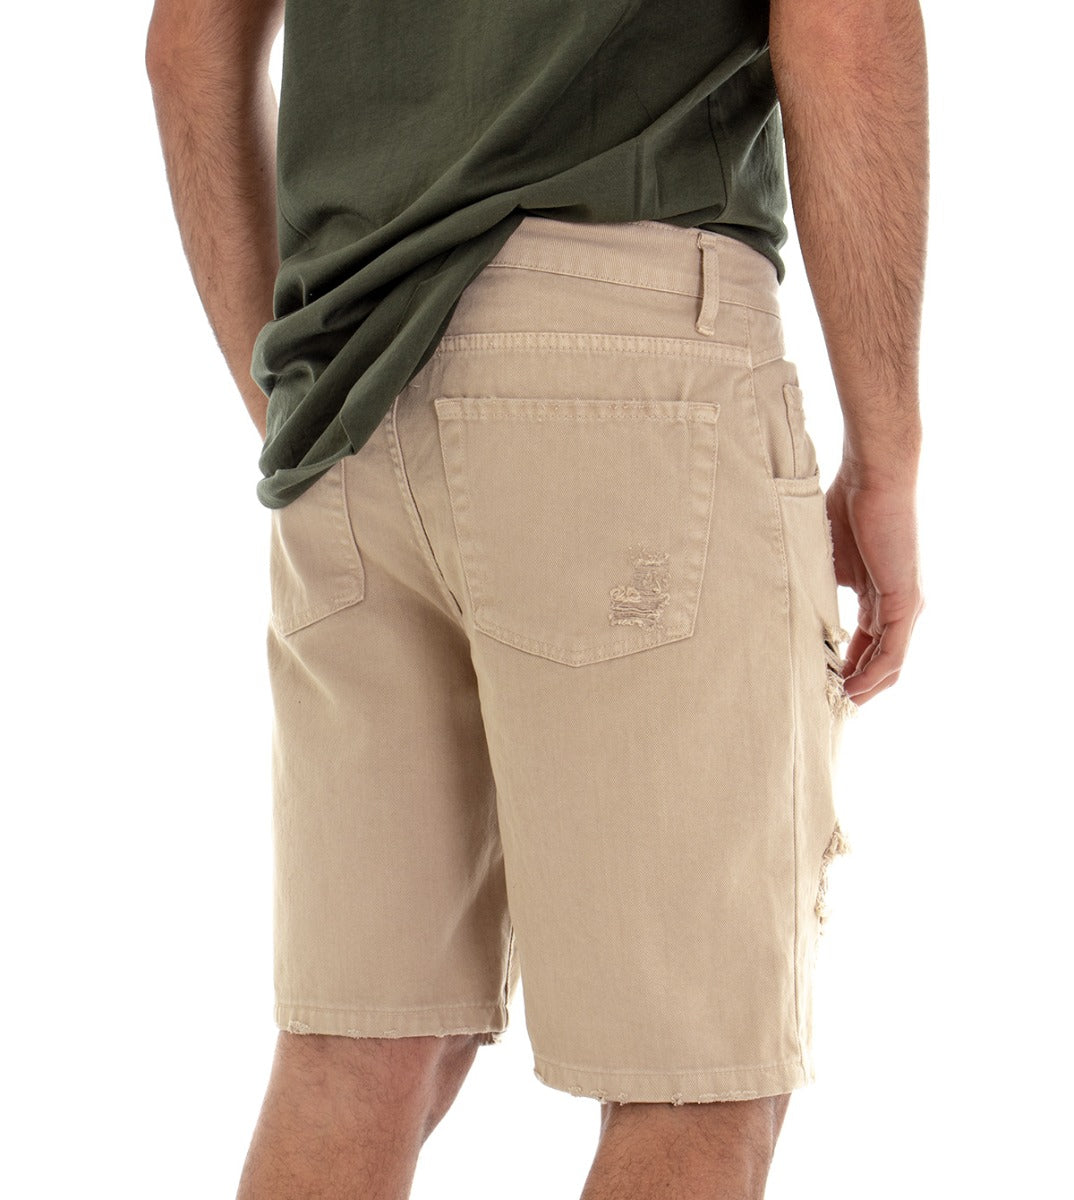 Bermuda Shorts Men's Beige Breaks Five Pockets GIOSAL-PC1327A